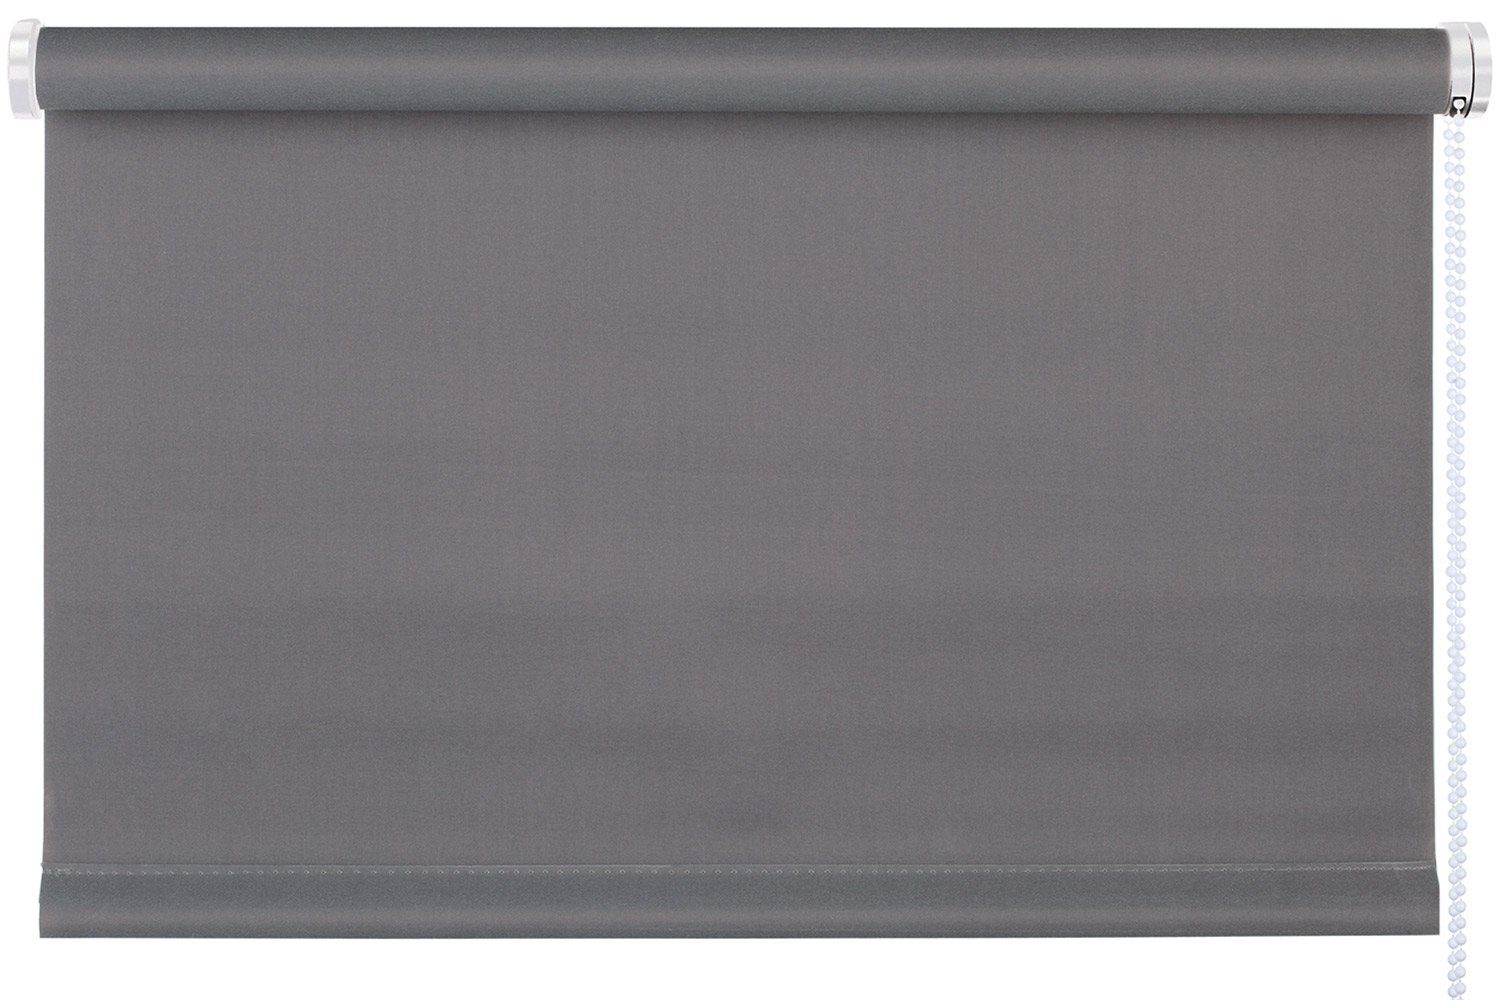 Rollo TREND, Design Rollo, Grau, B 45 x H 150 cm, mydeco, blickdicht, ohne Bohren, Klemmfix